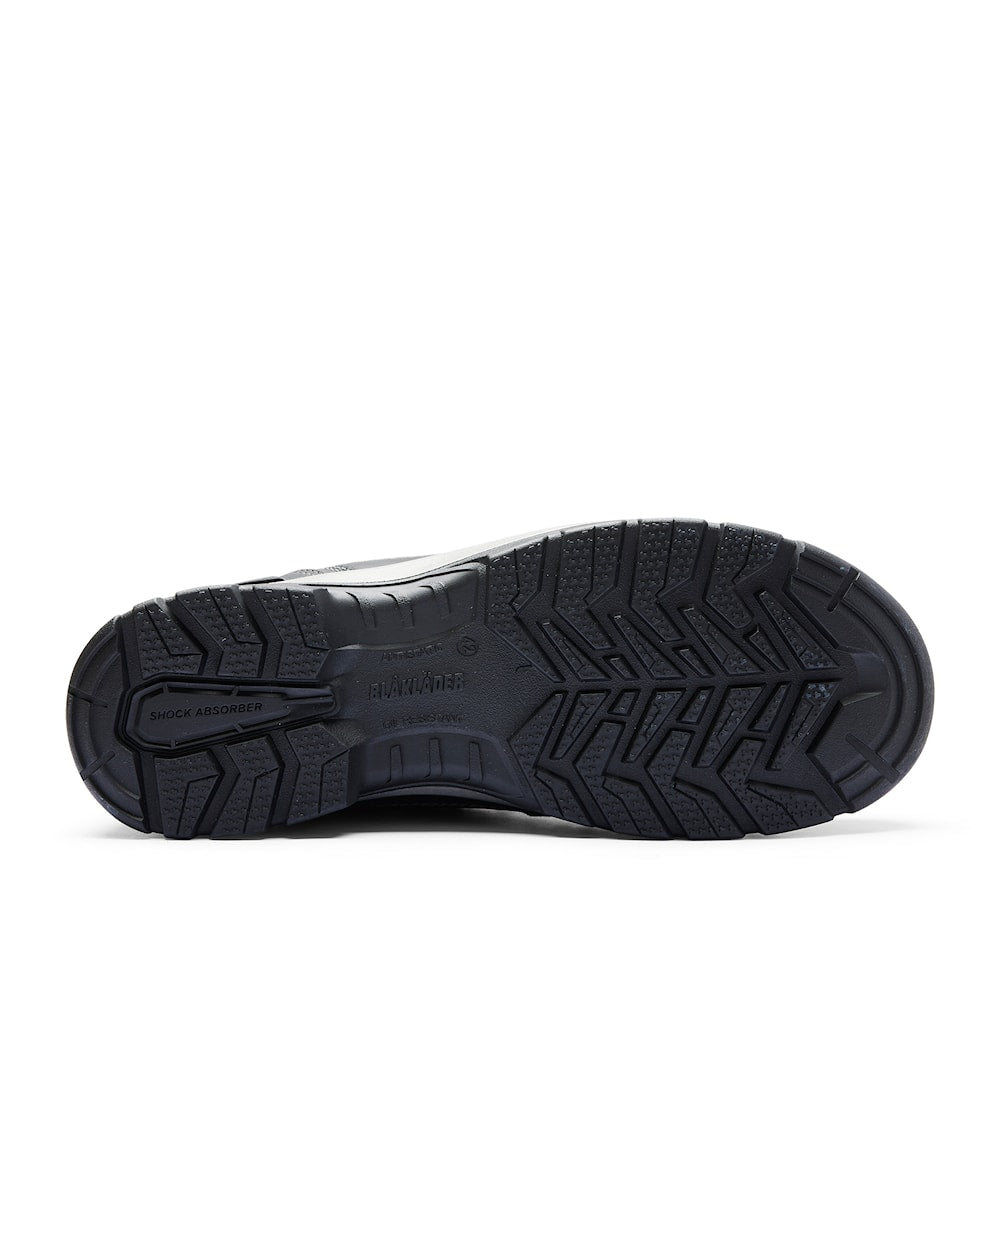 Blaklader 2450 Elite Safety Shoes S3 (24500000) - Mens - Sale